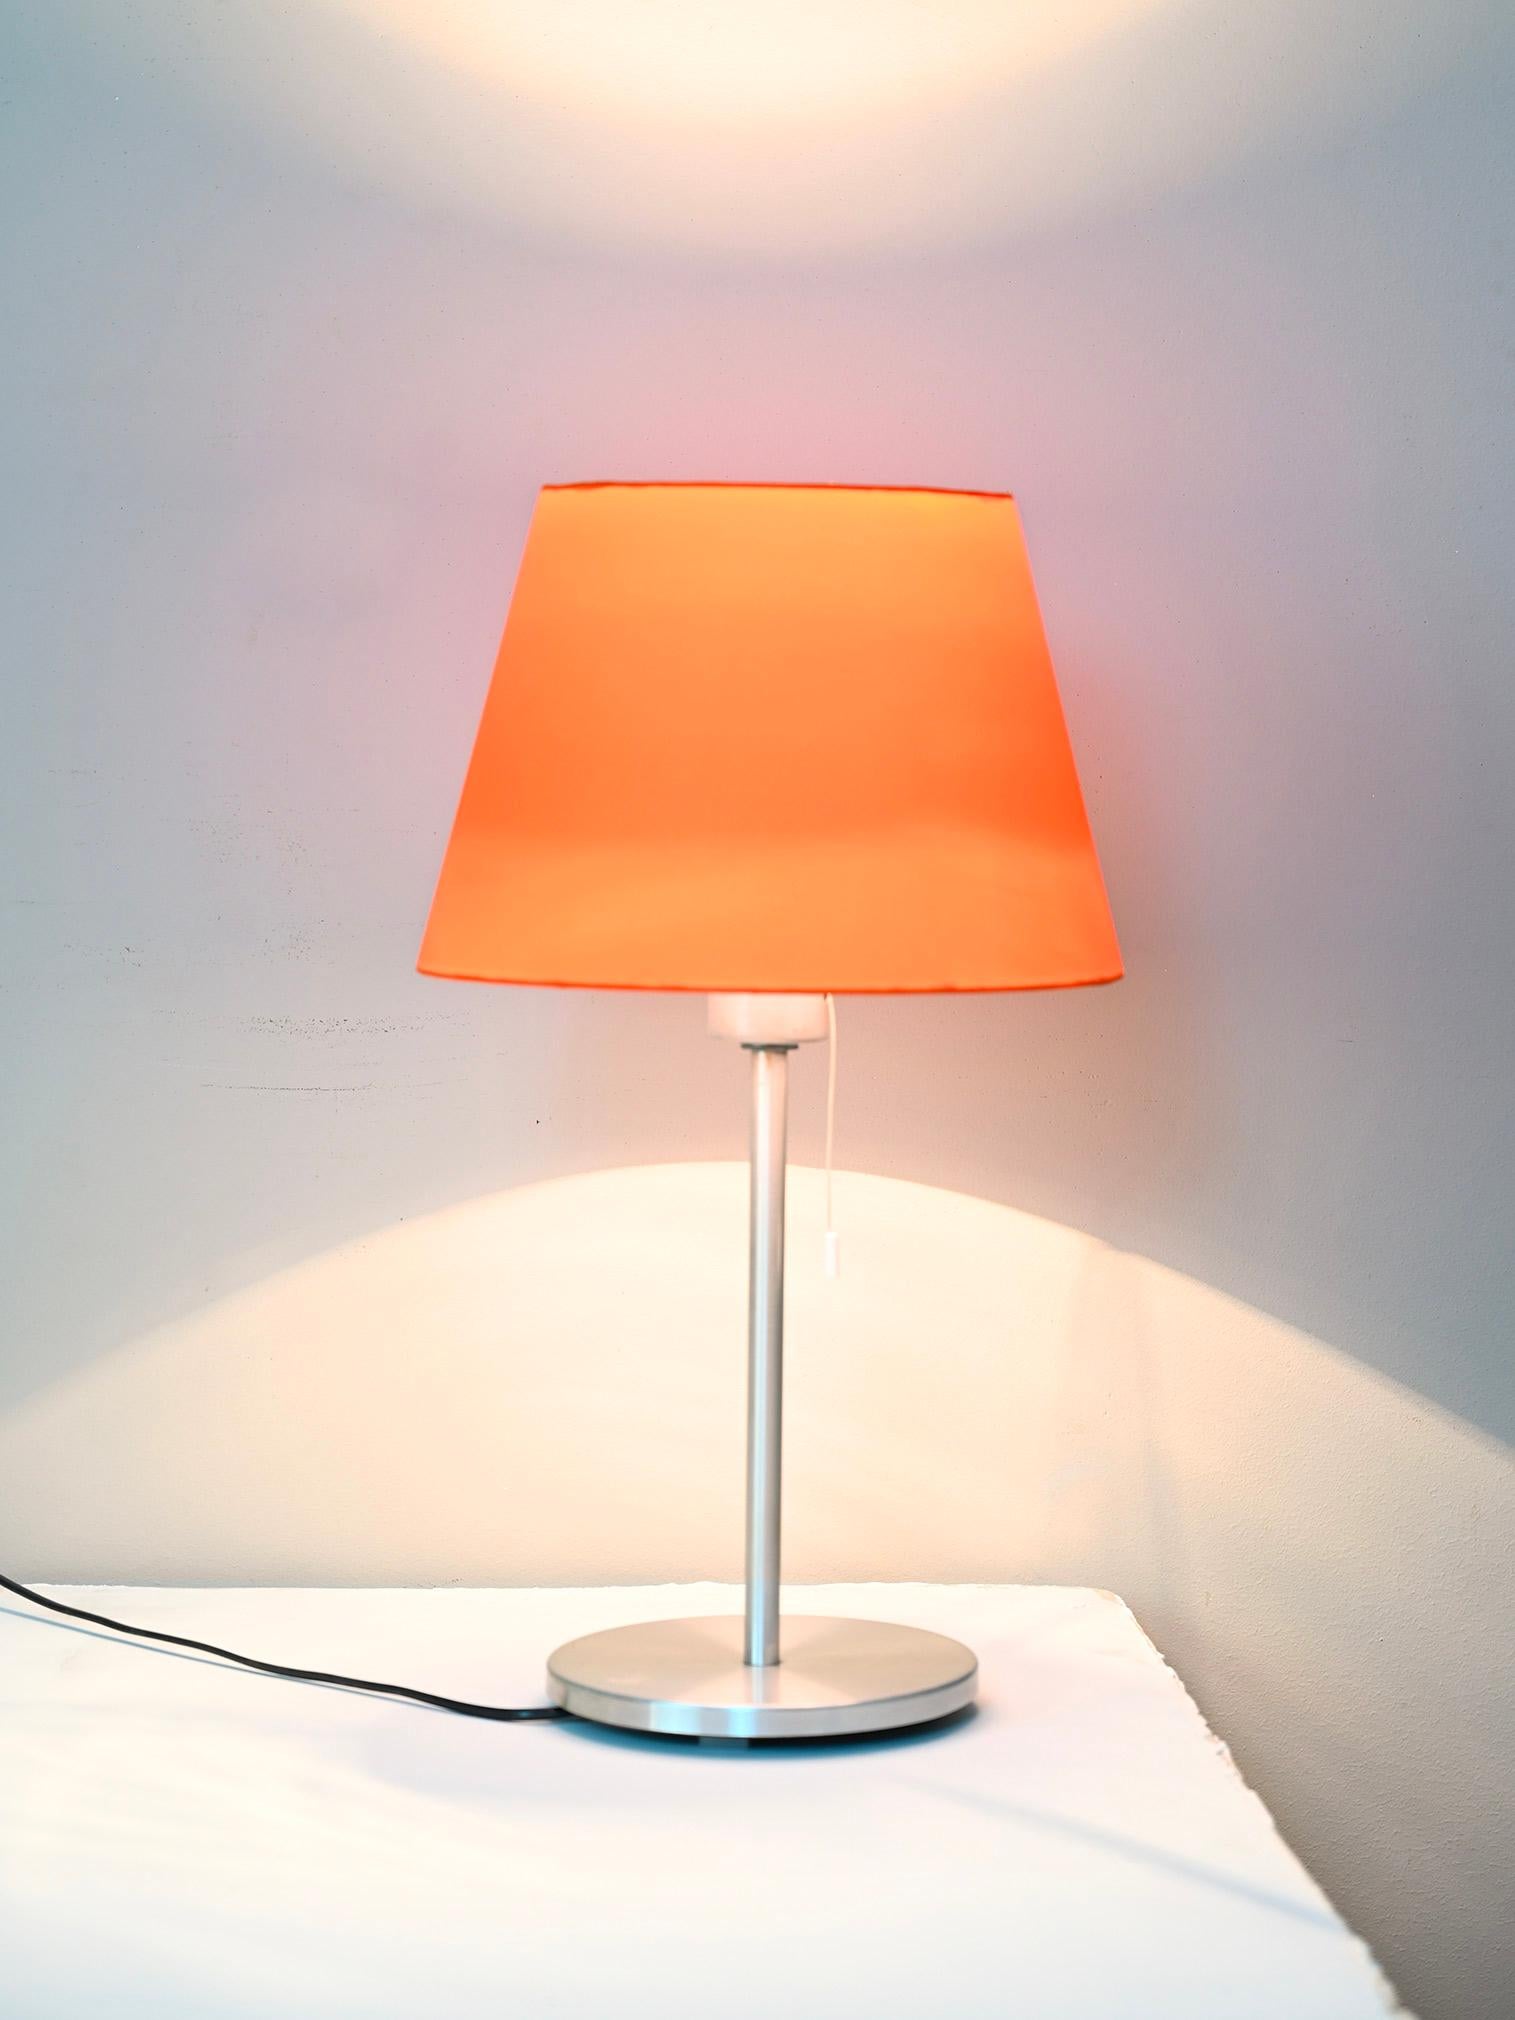 Lampe de table vintage de fabrication scandinave des années 1970.

La base est métallique tandis que l'abat-jour est de couleur orange et a été refait.

Bon état, la lampe fonctionne parfaitement.

BD066